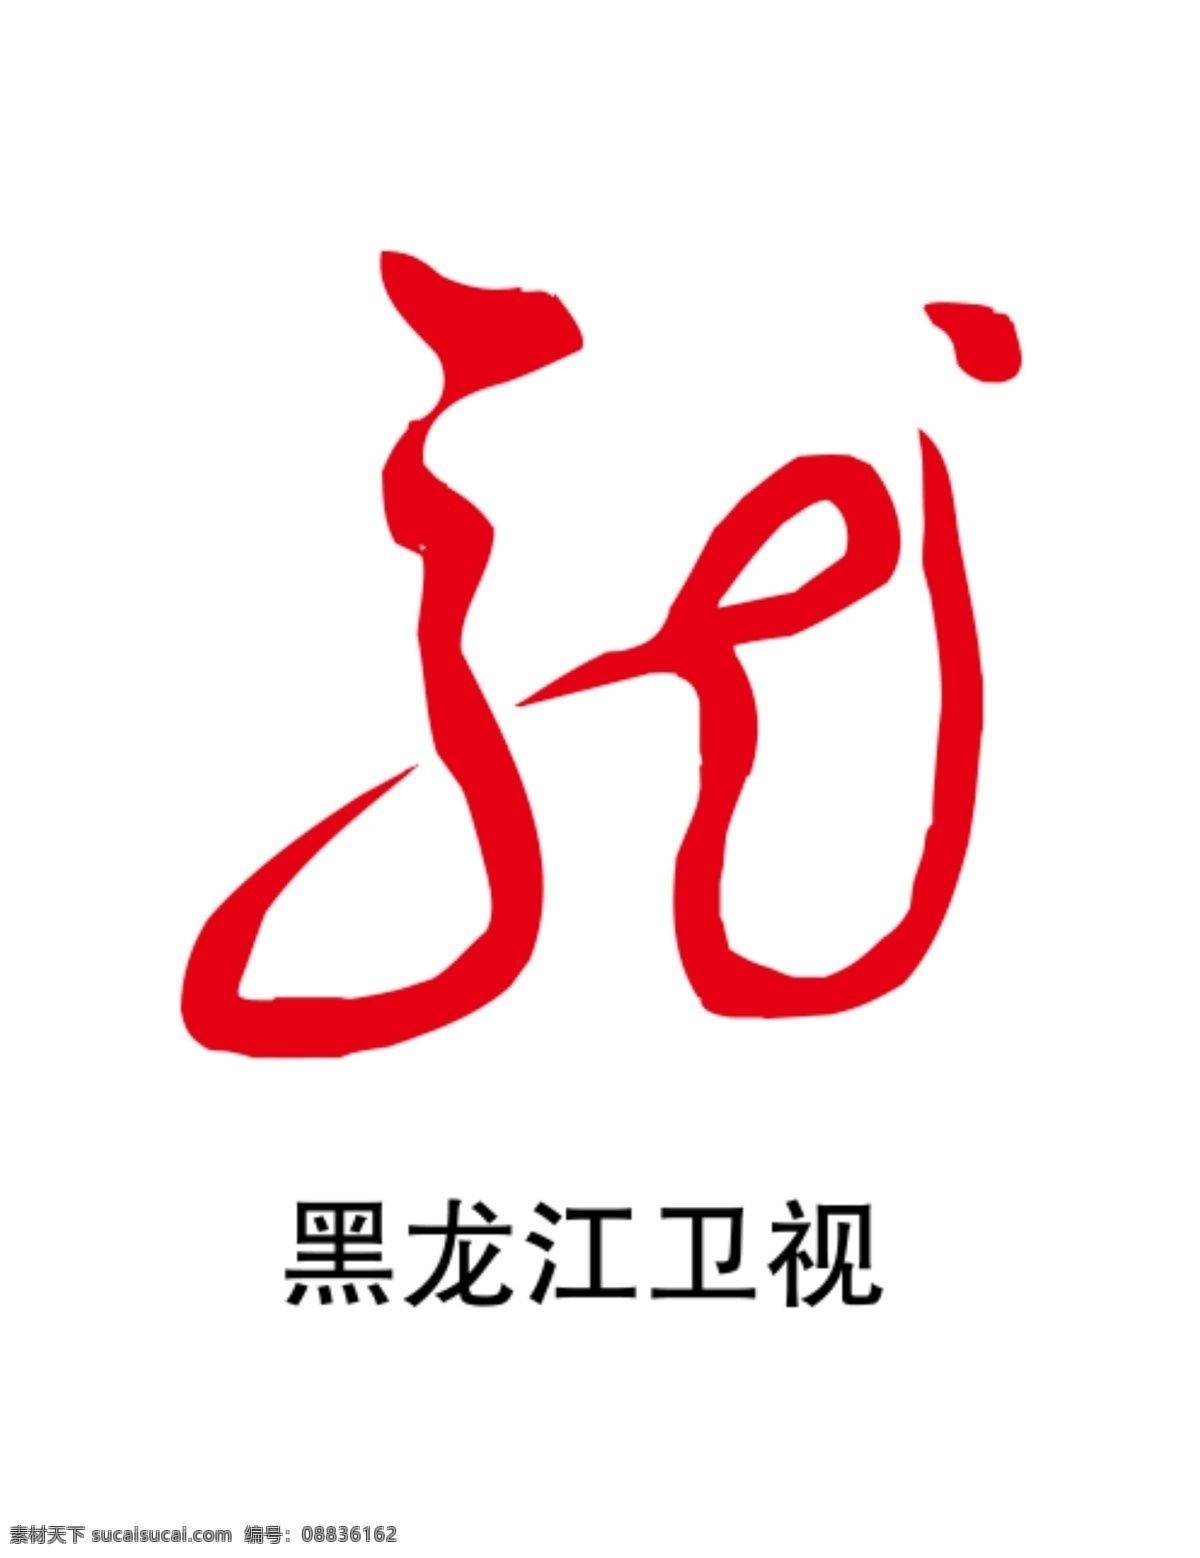 黑龙江卫视 黑龙江台标 黑龙江电视台 黑龙江 logo 黑龙江标志